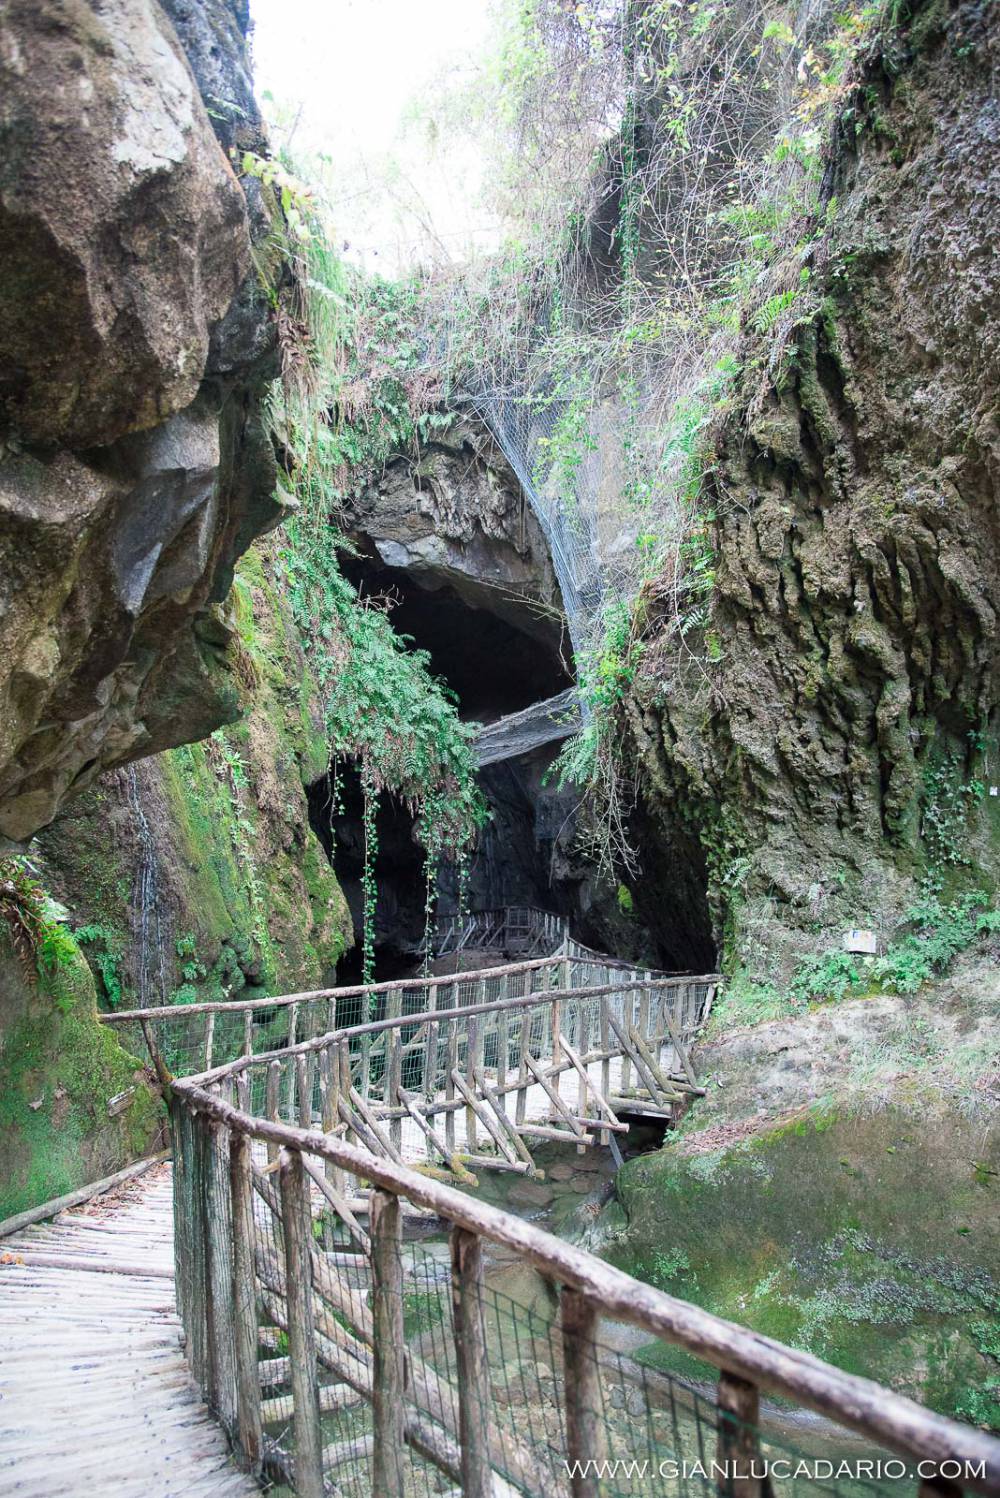 Le grotte del Caglieron - Fregona - foto 1 - Gianluca Dario Photography